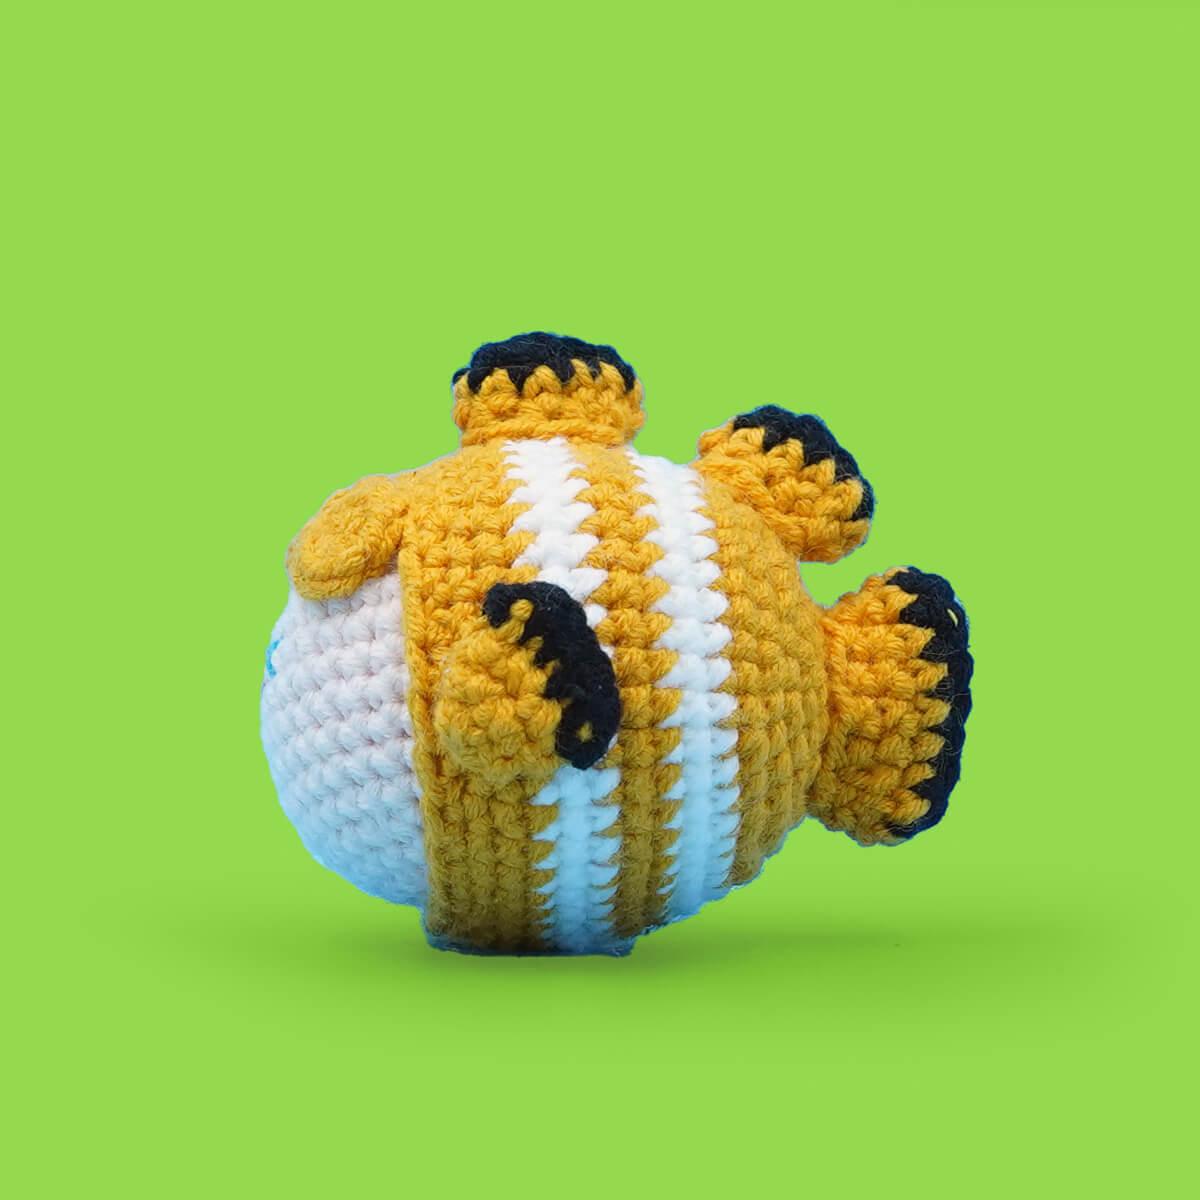 Small Goldfish Animal Crochet Kits for Beginner - HiCrochet